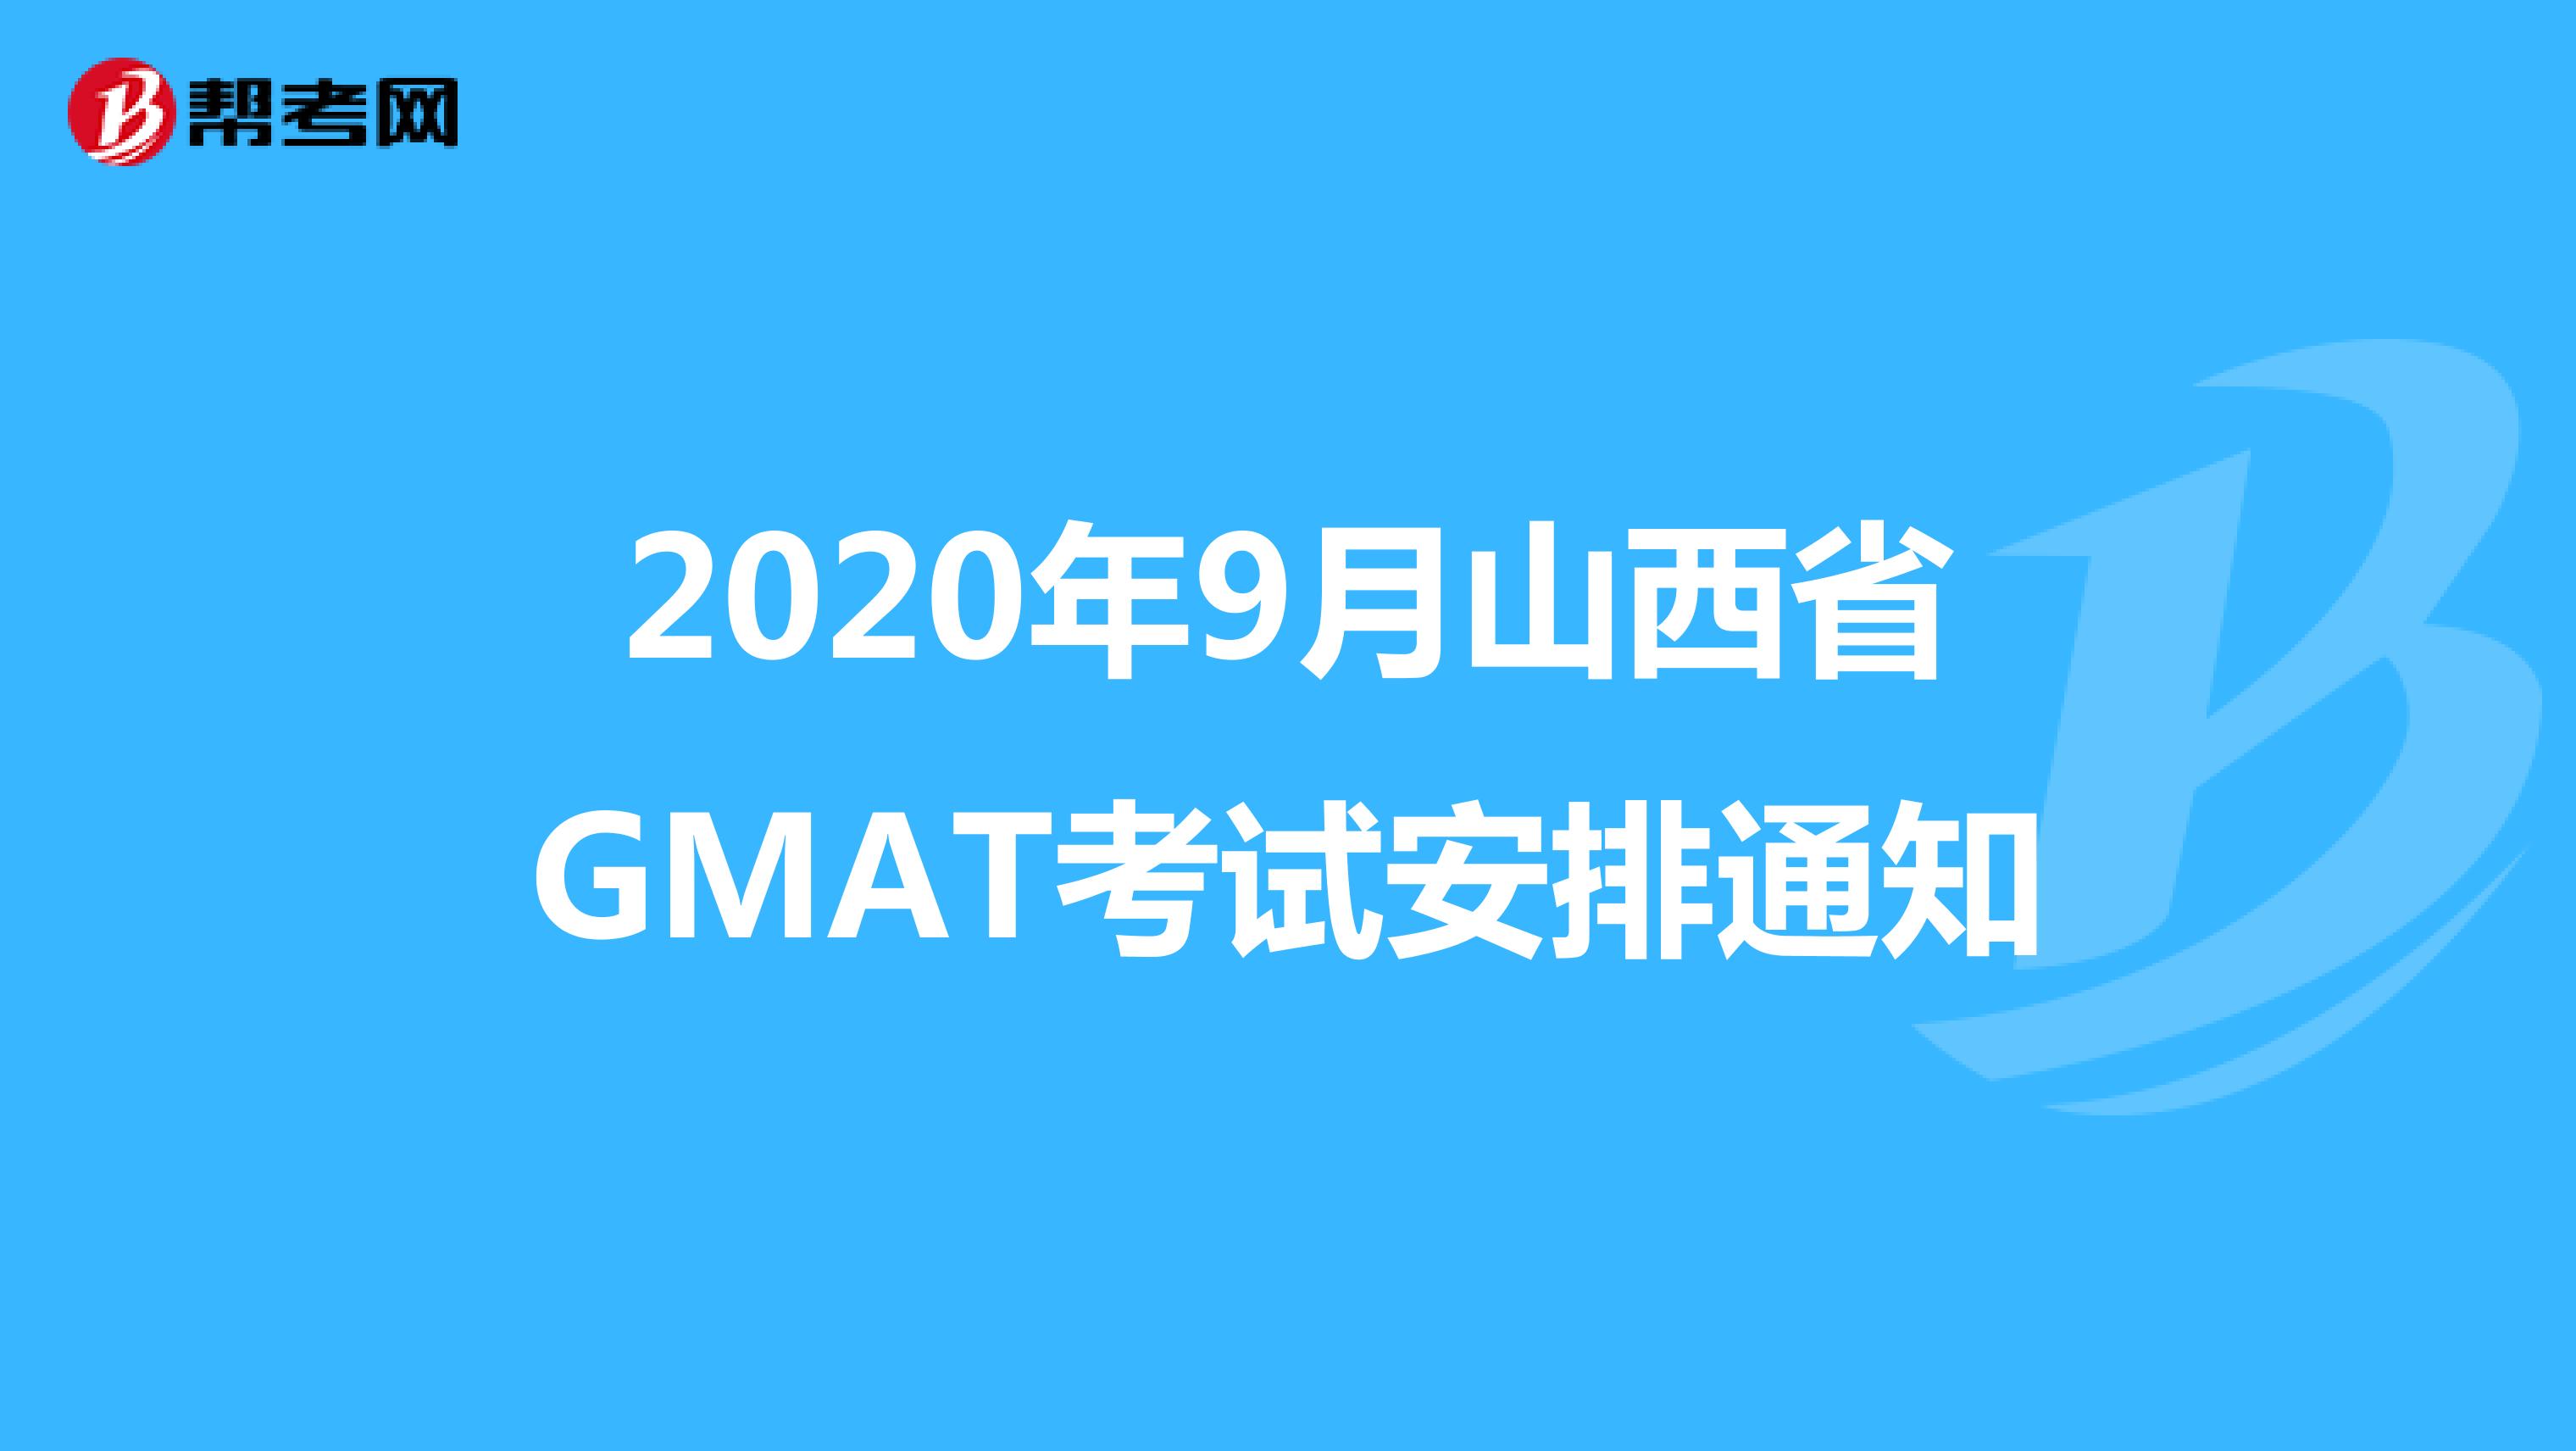 2020年9月山西省GMAT考试安排通知